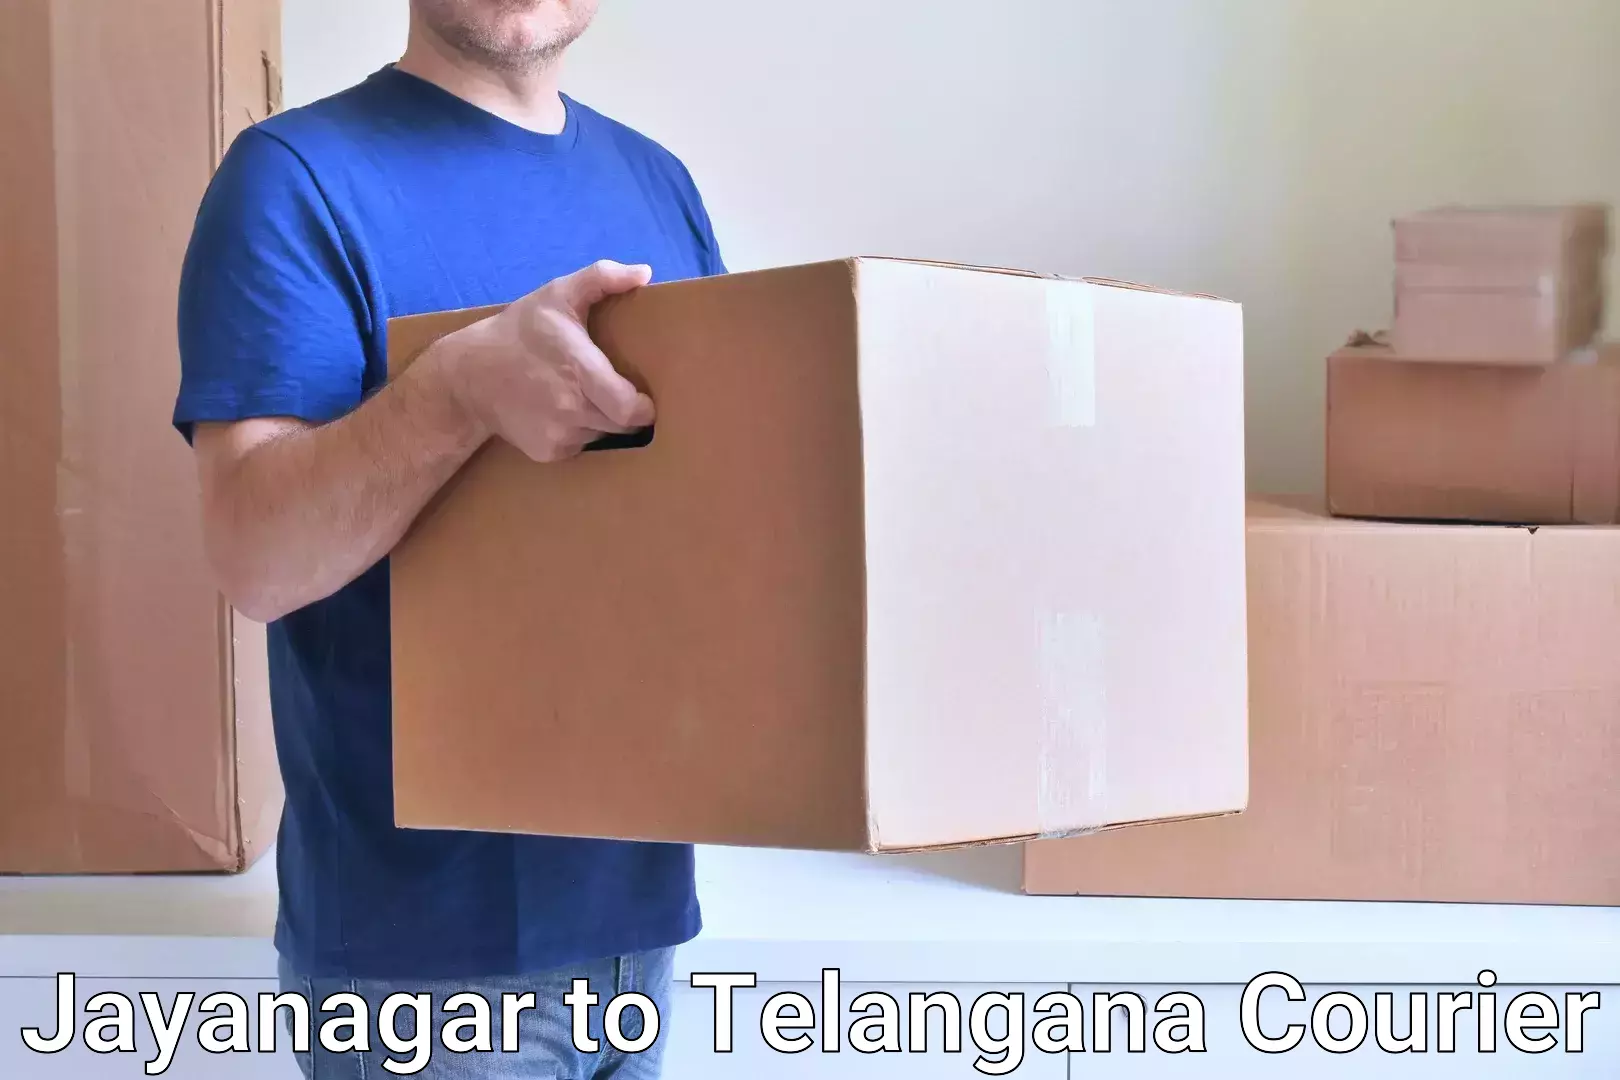 Efficient parcel service Jayanagar to Armoor